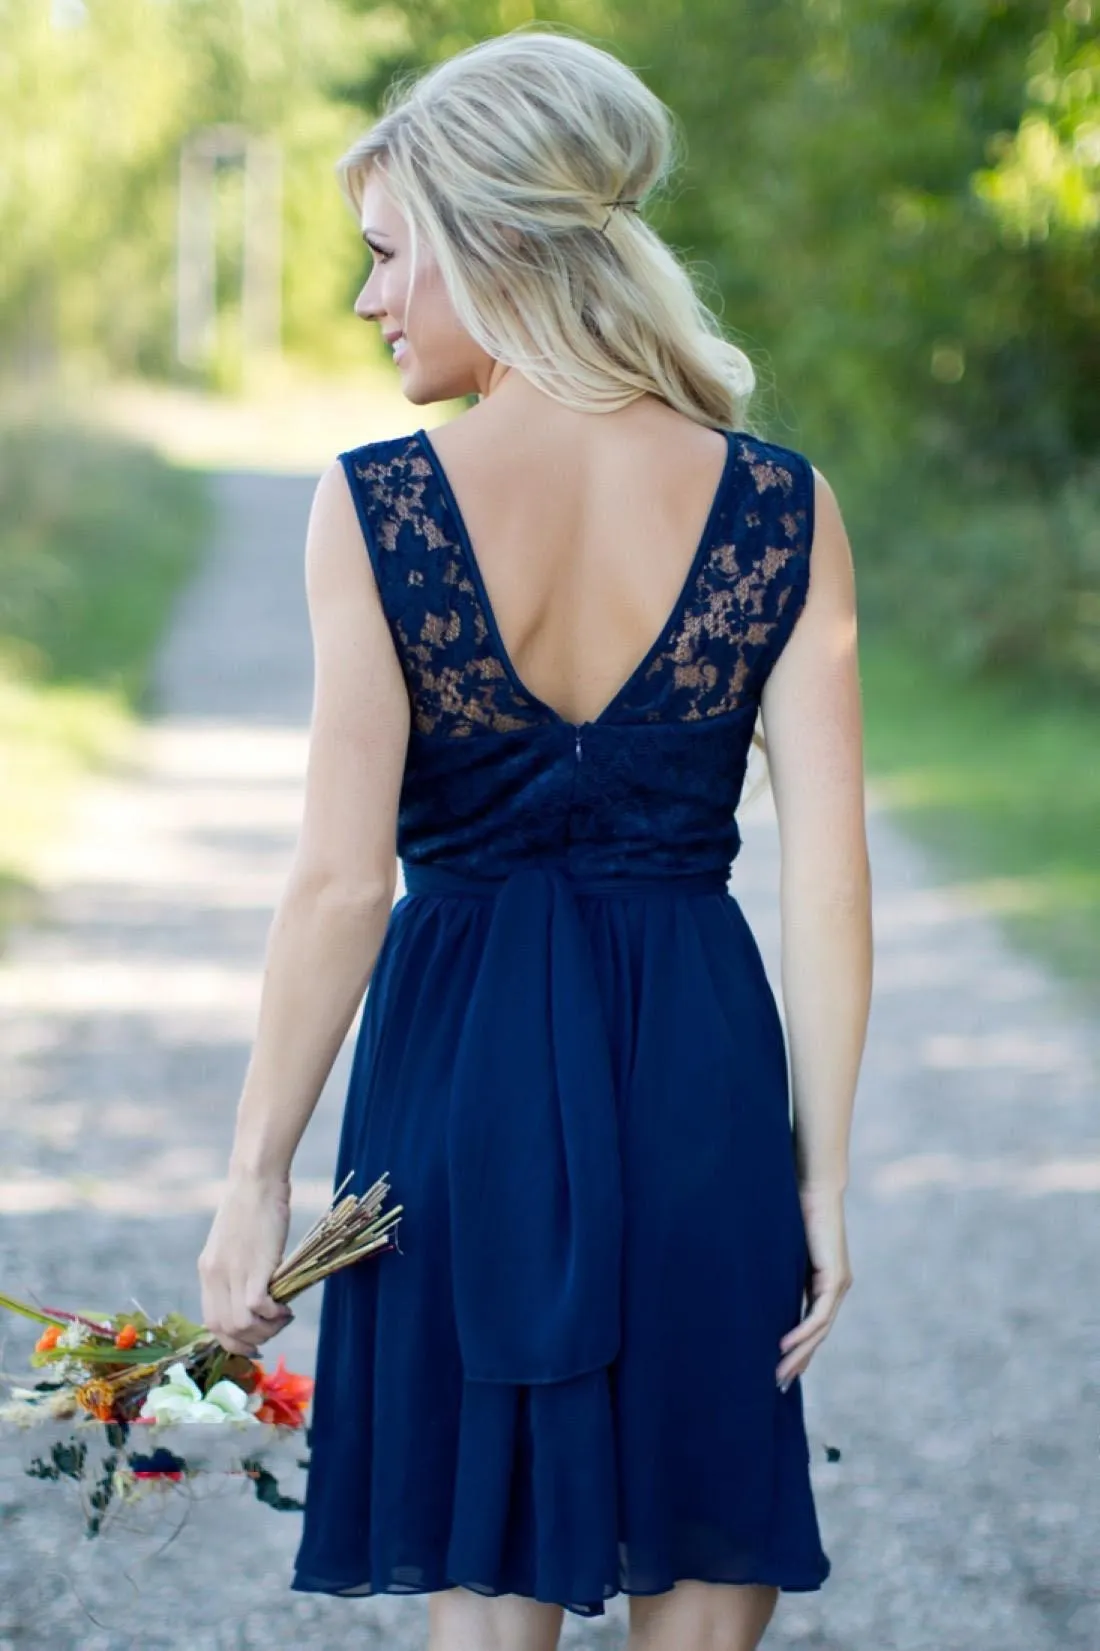 Landstijl Royal Blue Chiffon Lace Short Bruidsmeisje jurken voor bruiloften goedkoop juweel backless knie lengte casual jurken215f